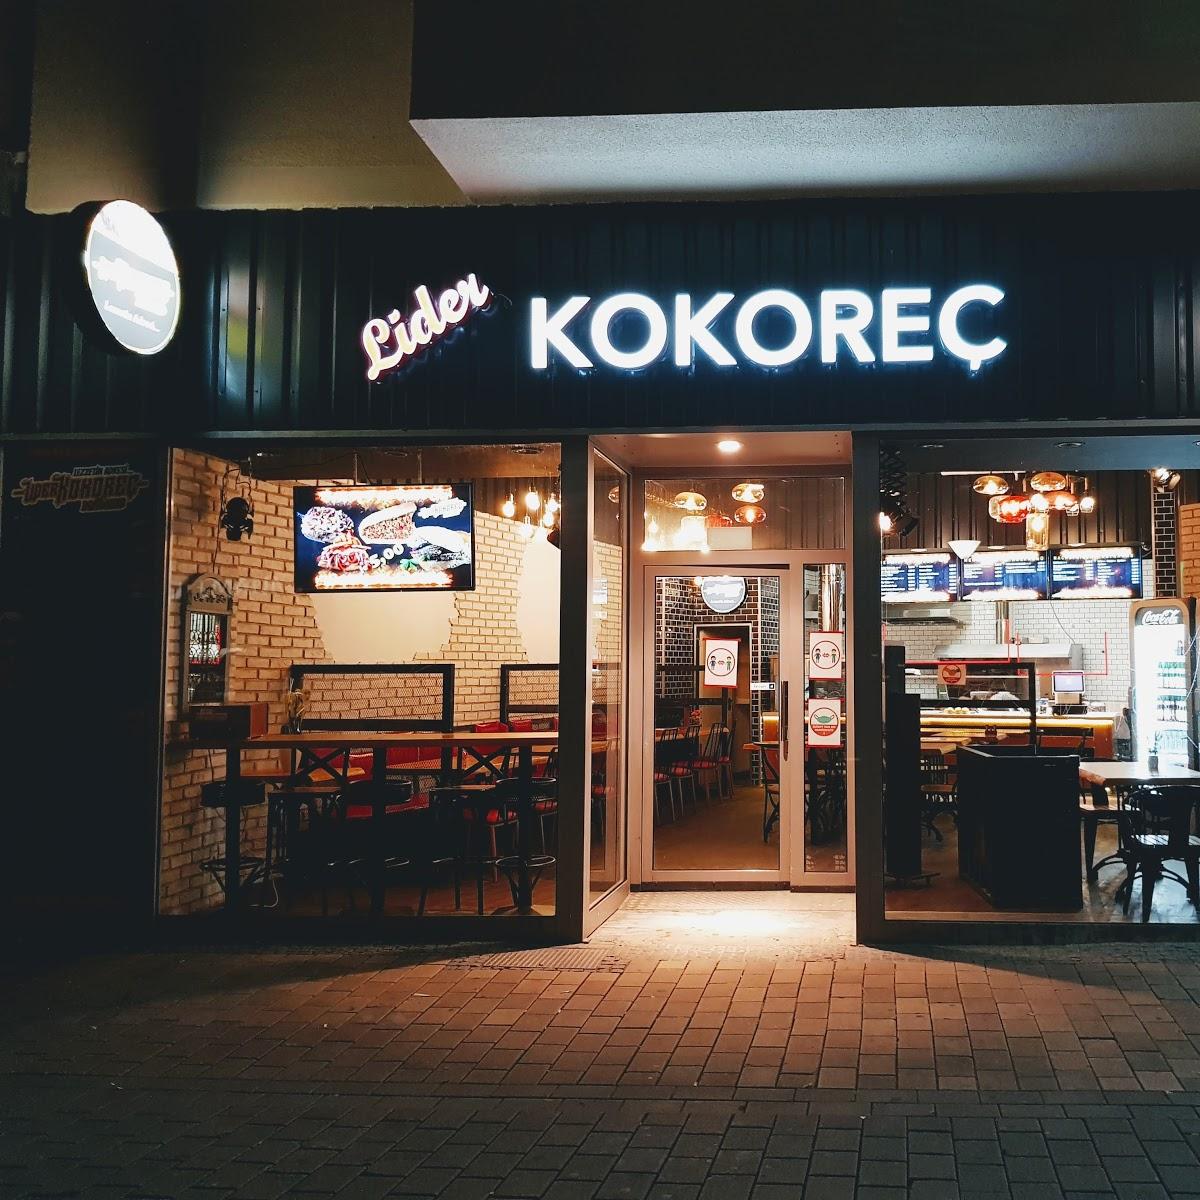 Restaurant "Lider Kokorec" in Dortmund